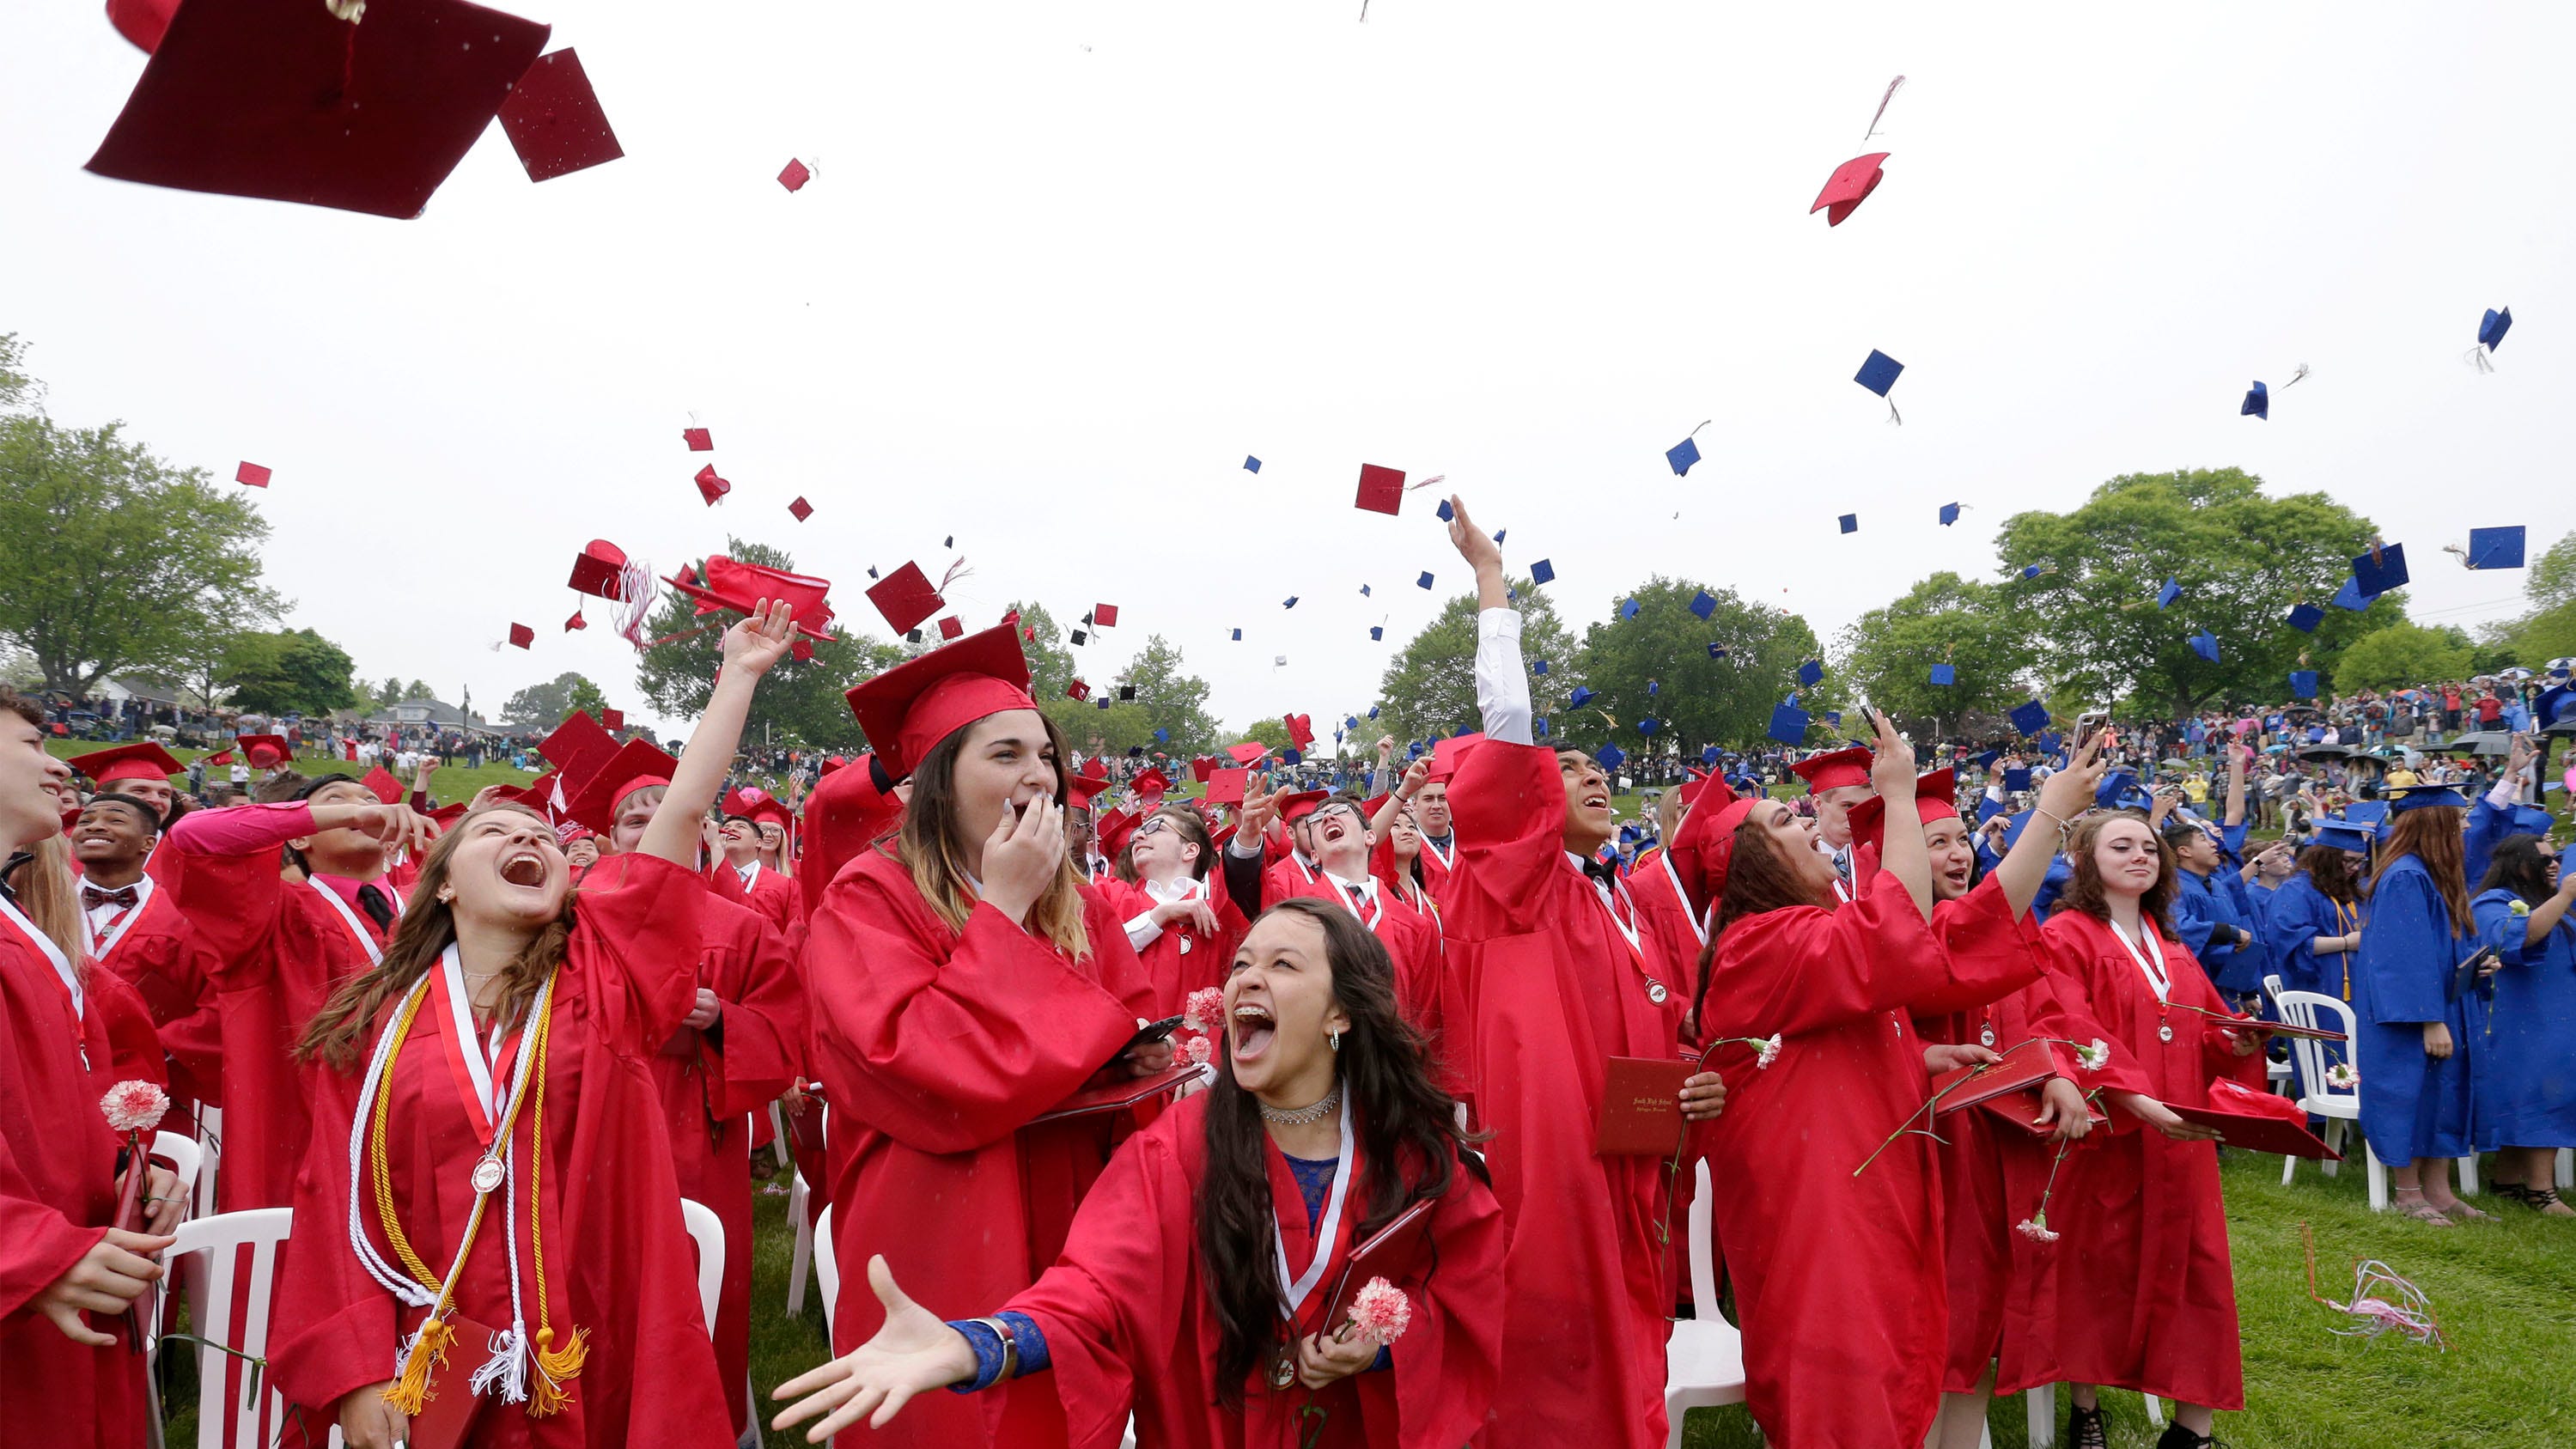 Sheboygan Area School District to hold in-person graduation ceremonies